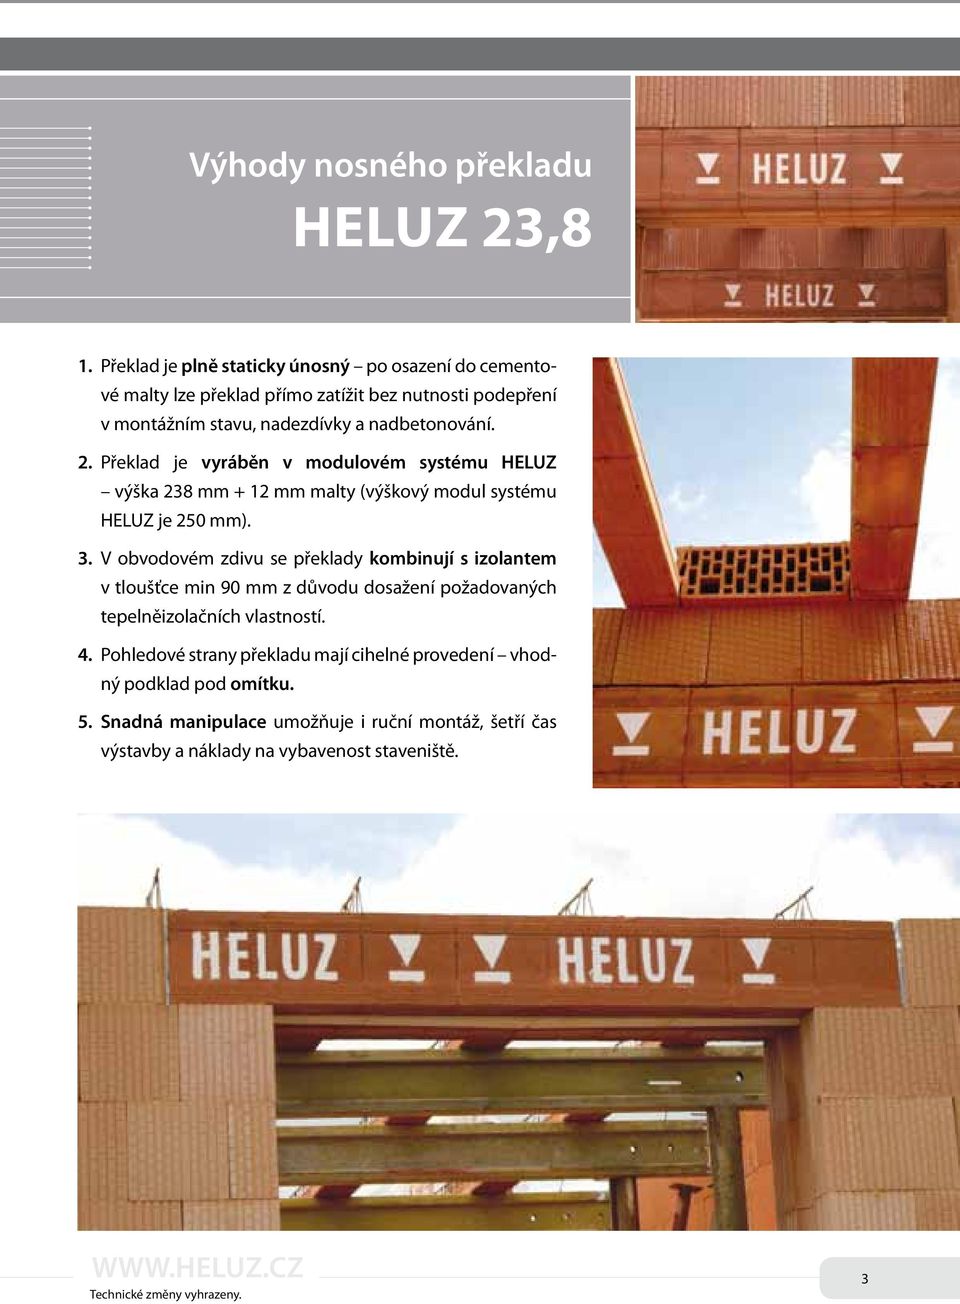 2. Překlad je vyráběn v modulovém systému HELUZ výška 238 mm + 12 mm malty (výškový modul systému HELUZ je 250 mm). 3.